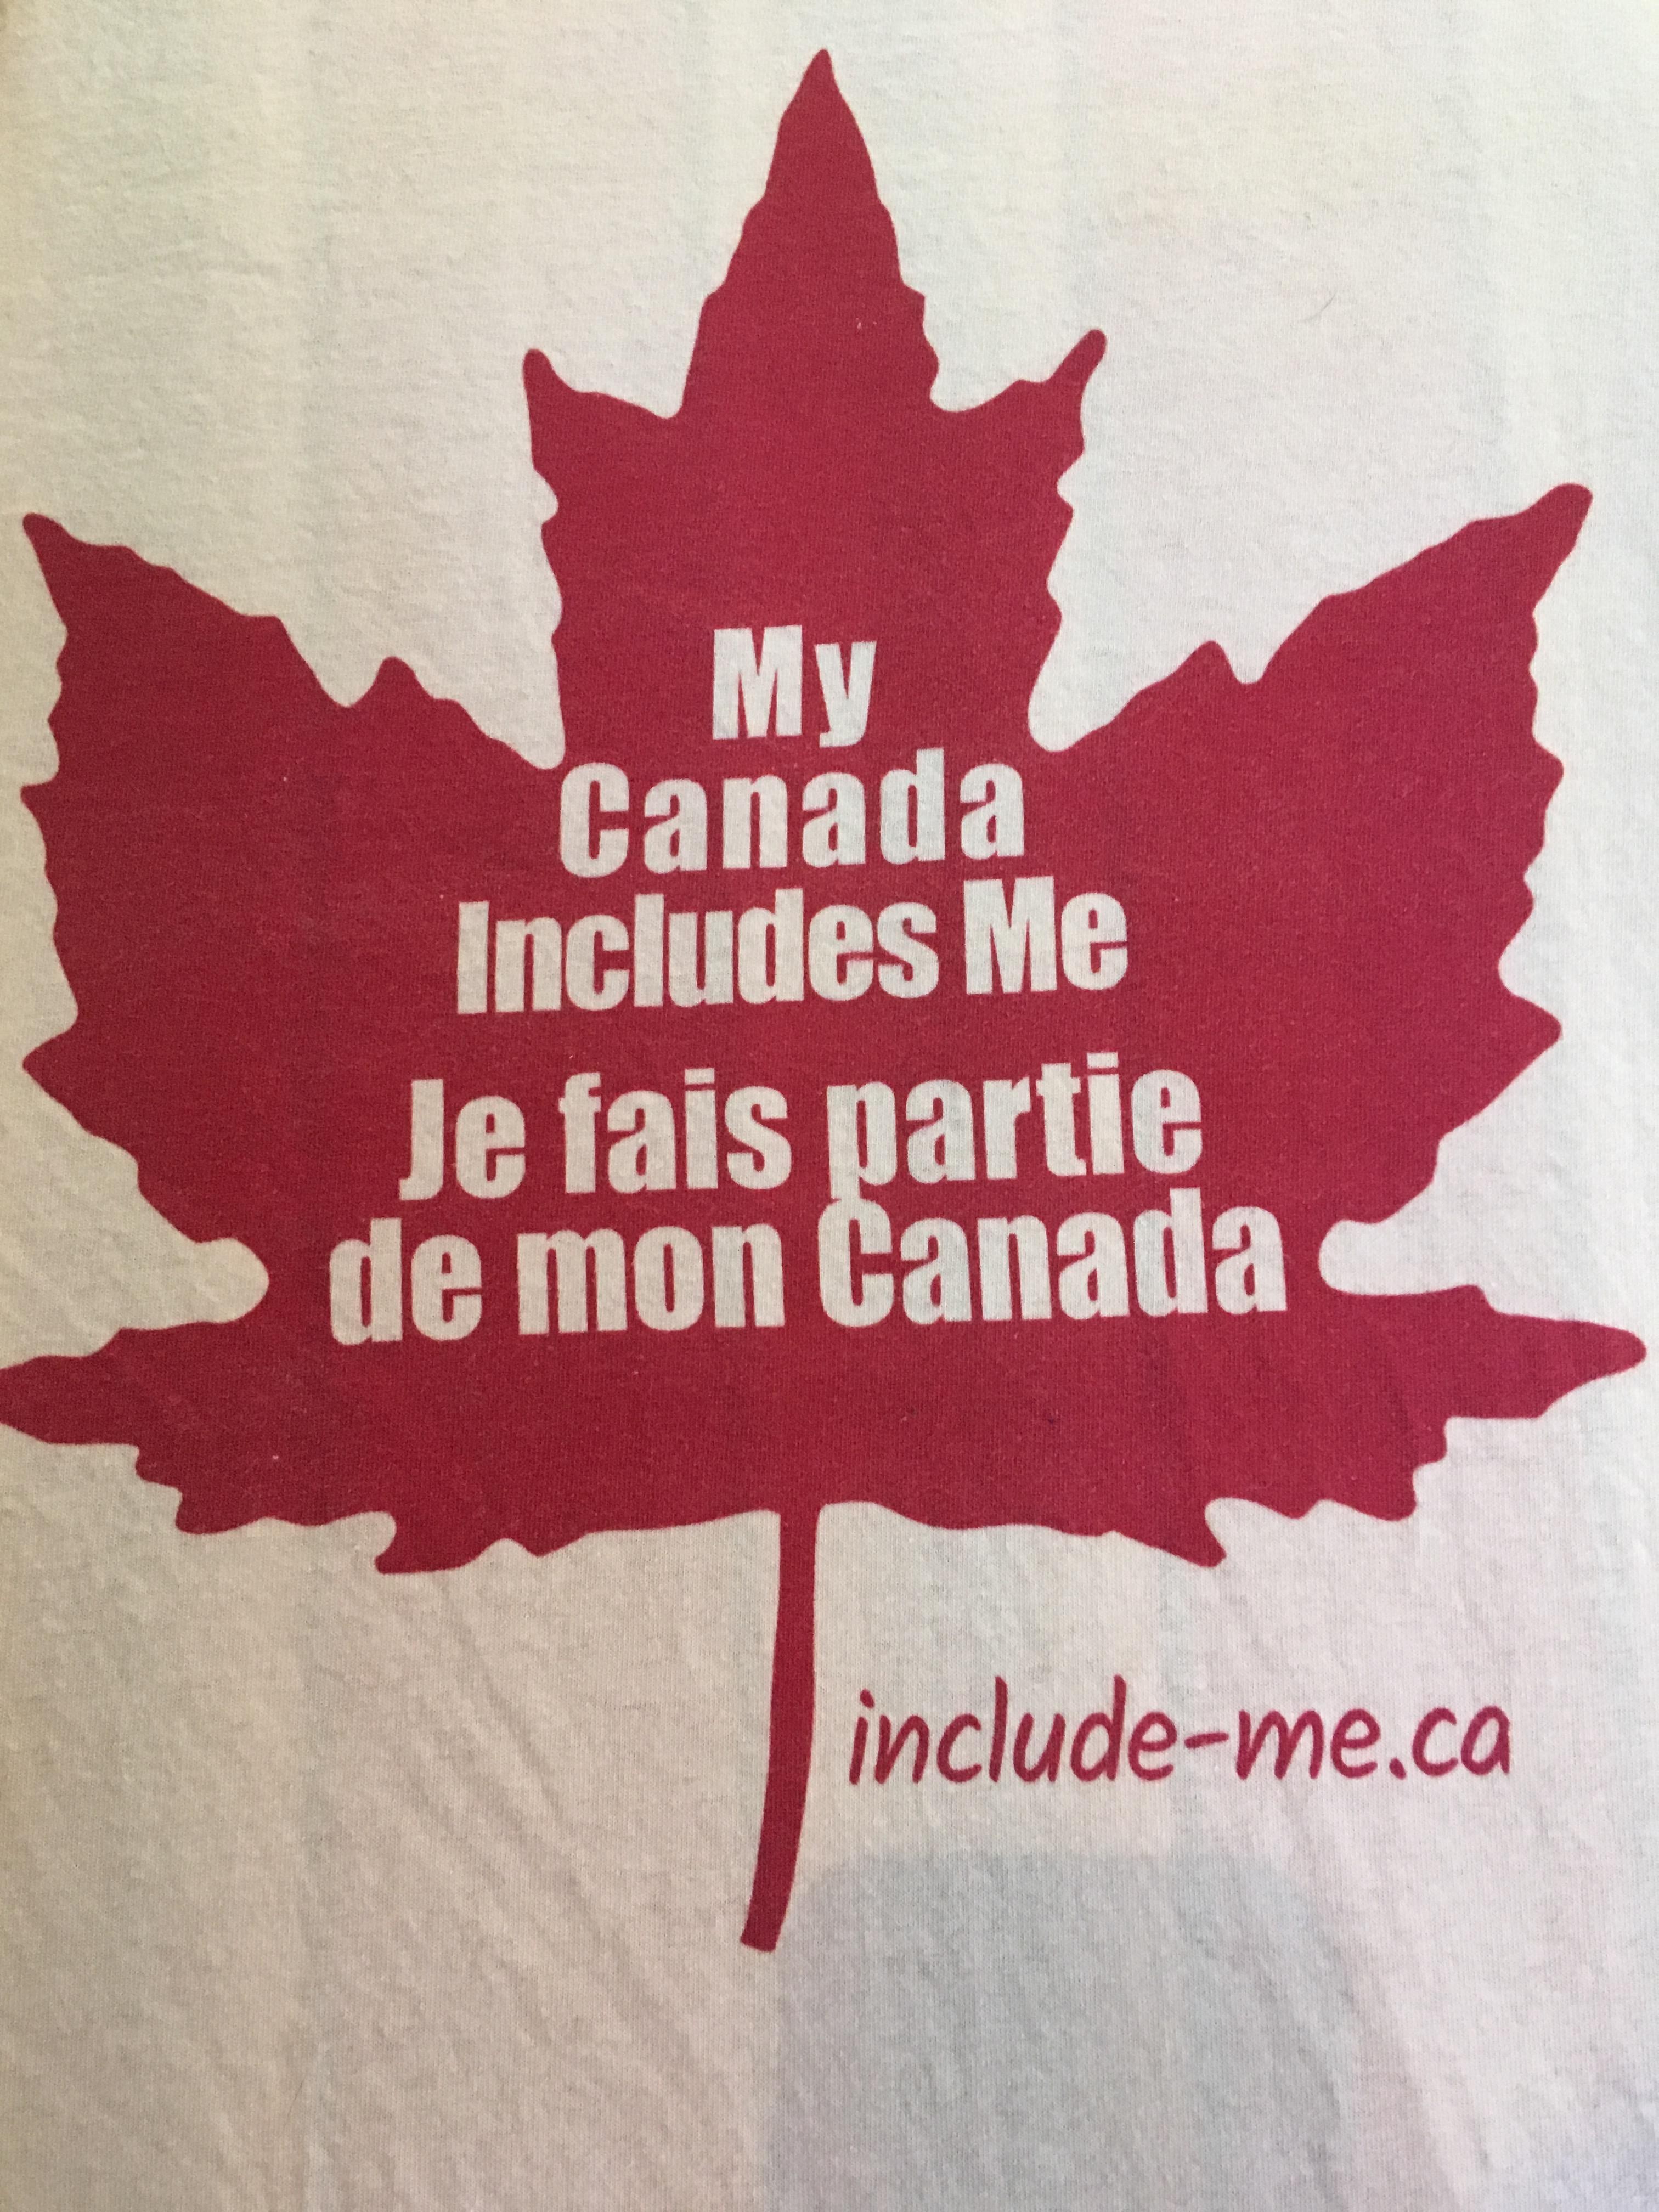 My Canada Includes Me / Je fais partie de mon Canada